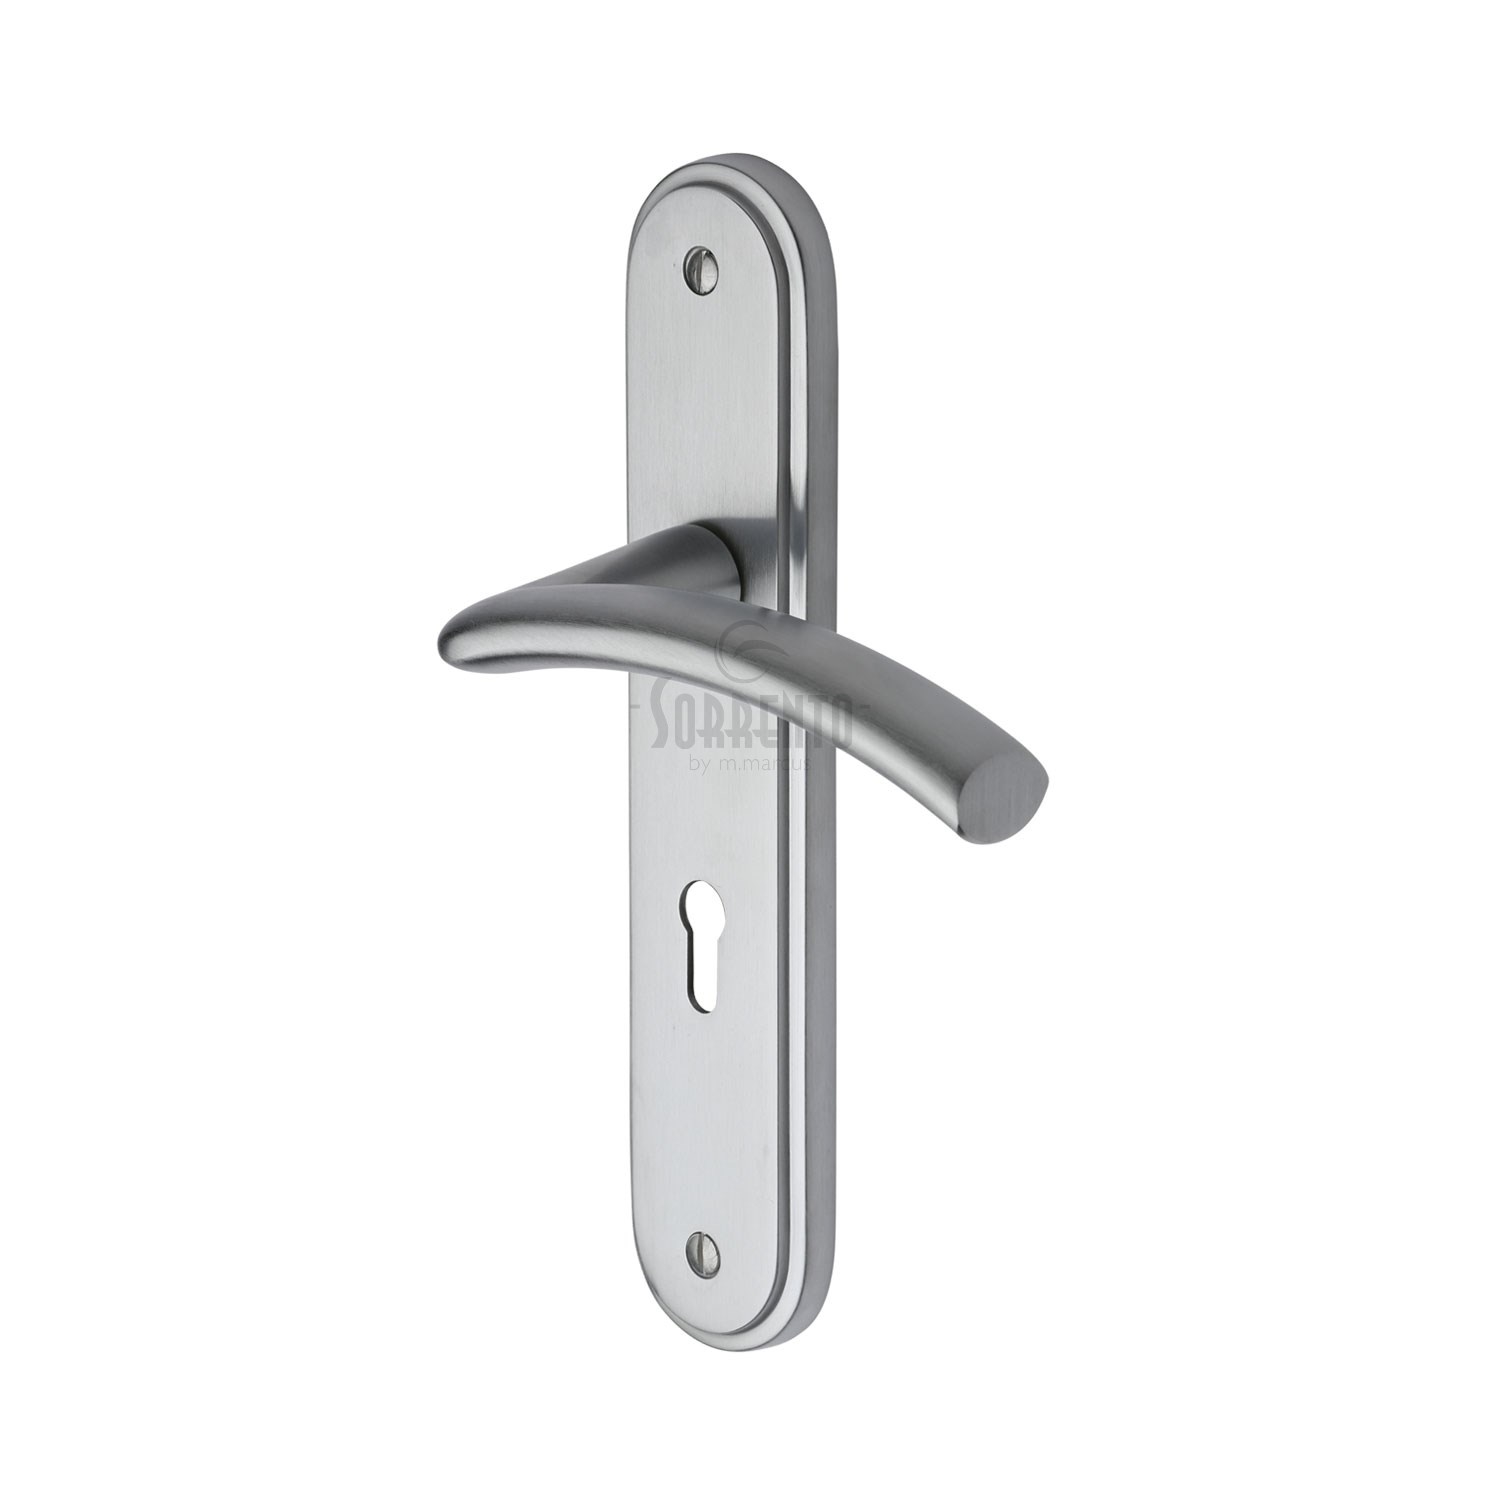 Sorrento Door Handle Lever Lock Tosca Design